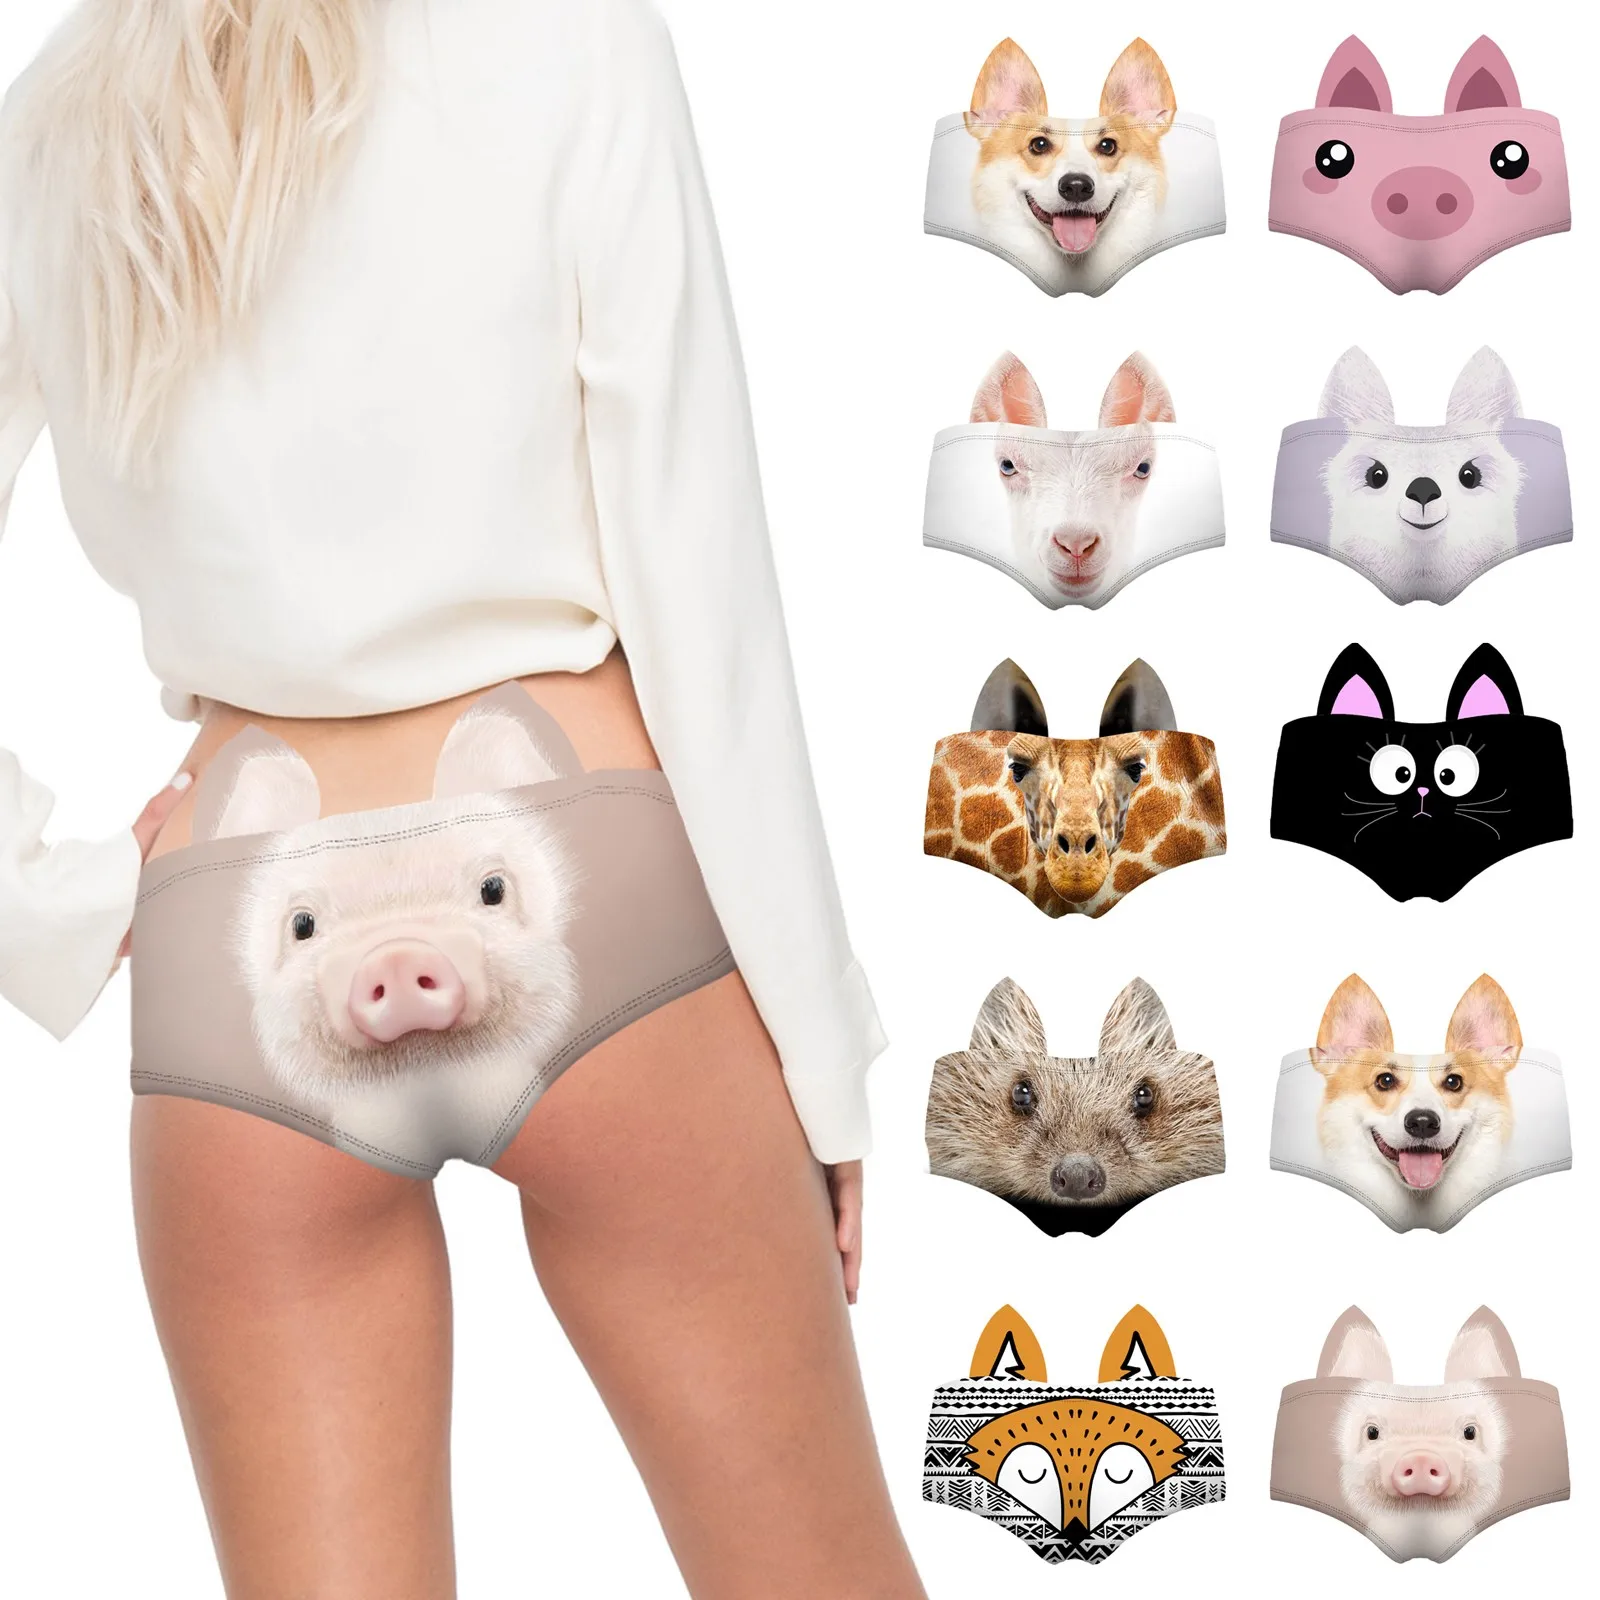 Best Panties Images On Pinterest Cute Kittens Pigs 2